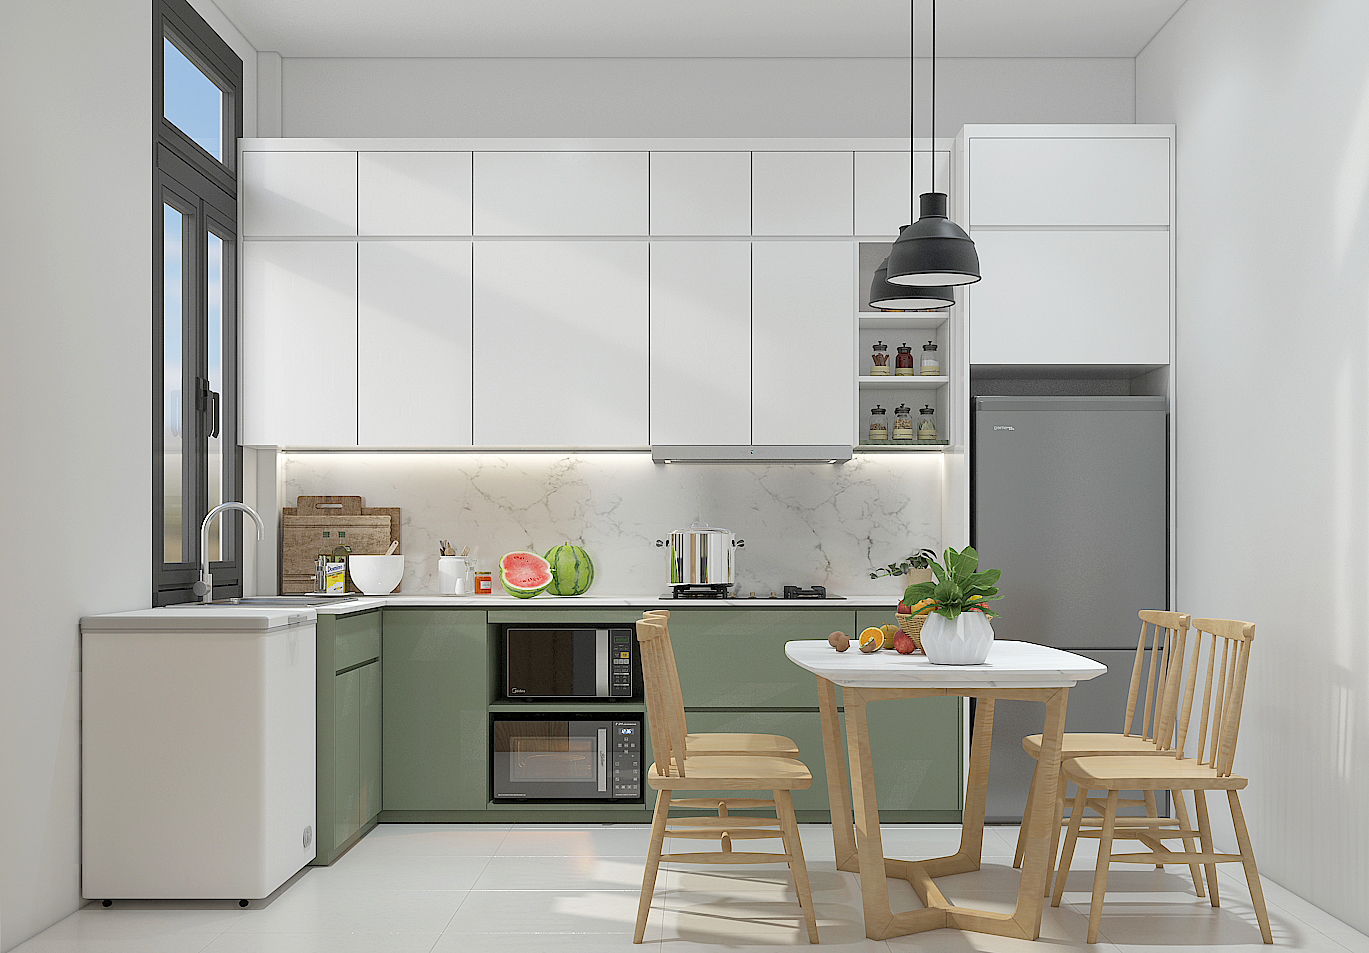 Thiết kế nội thất chung cư mini với gam màu sáng tạo không gian thoáng hơn